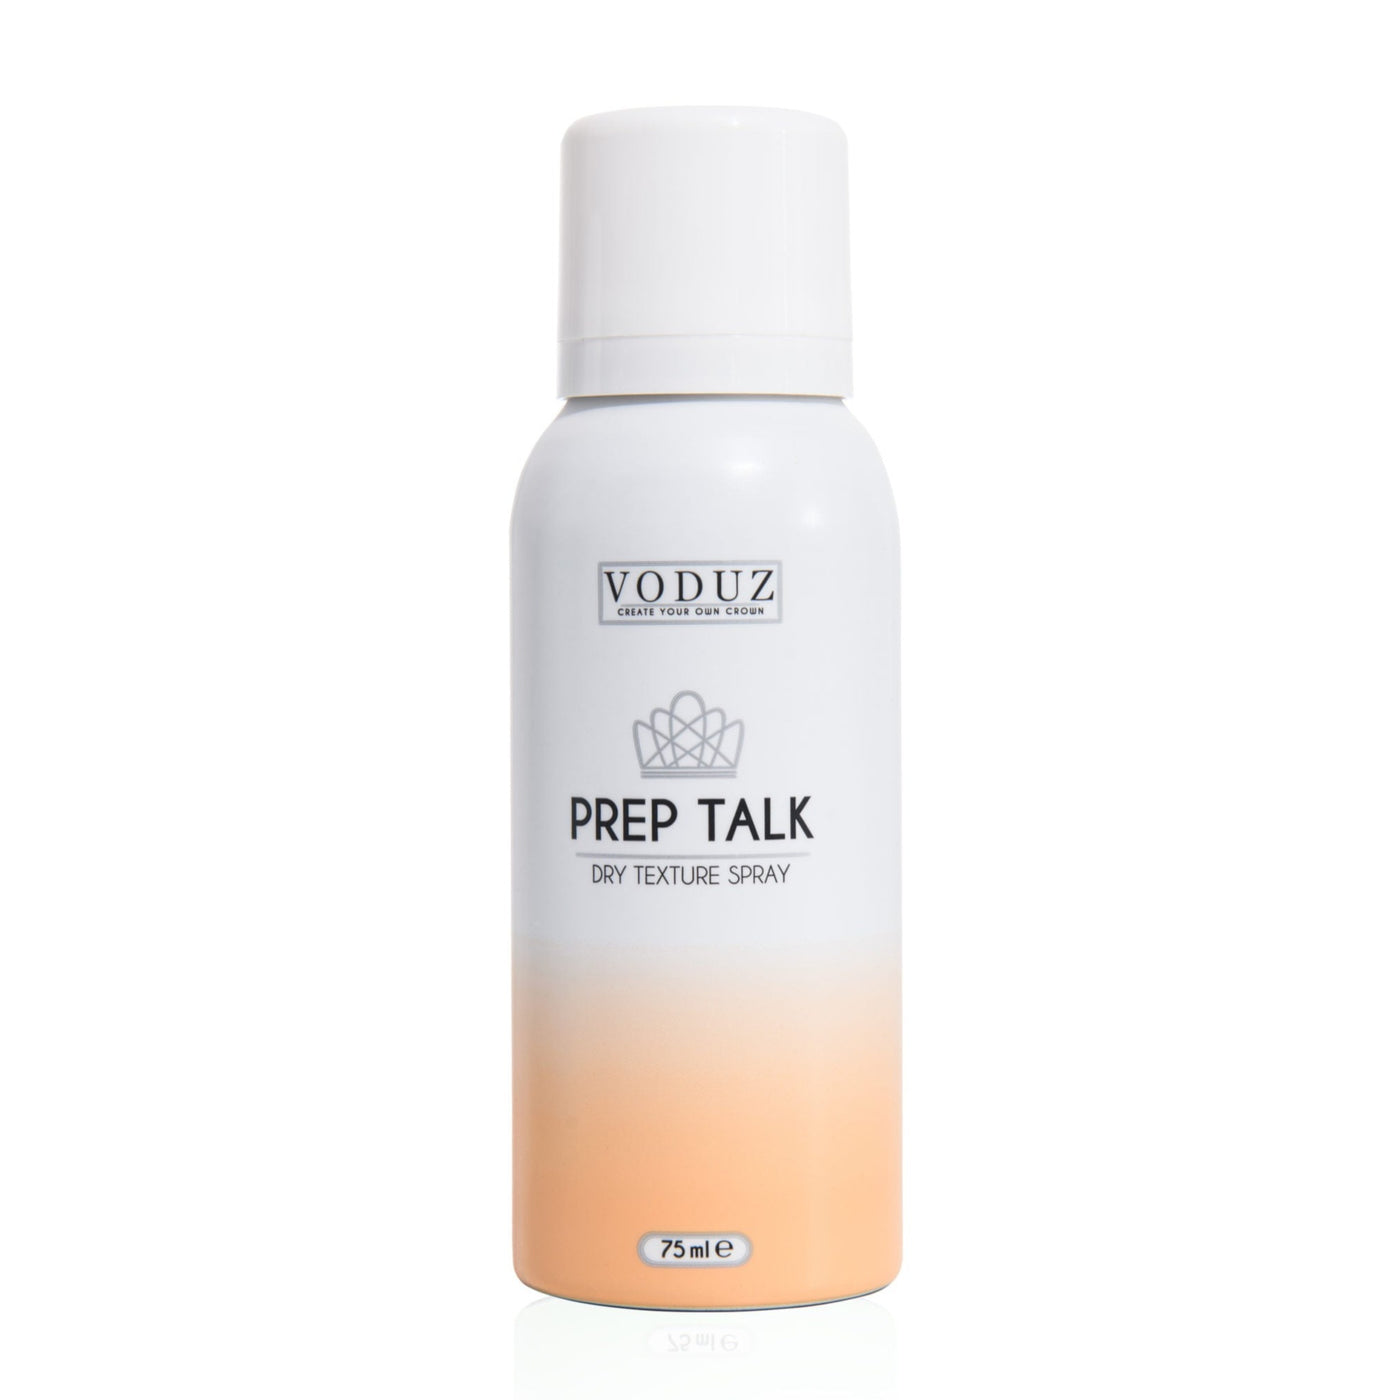 'Prep Talk' - Dry Texture Spray (75ml)